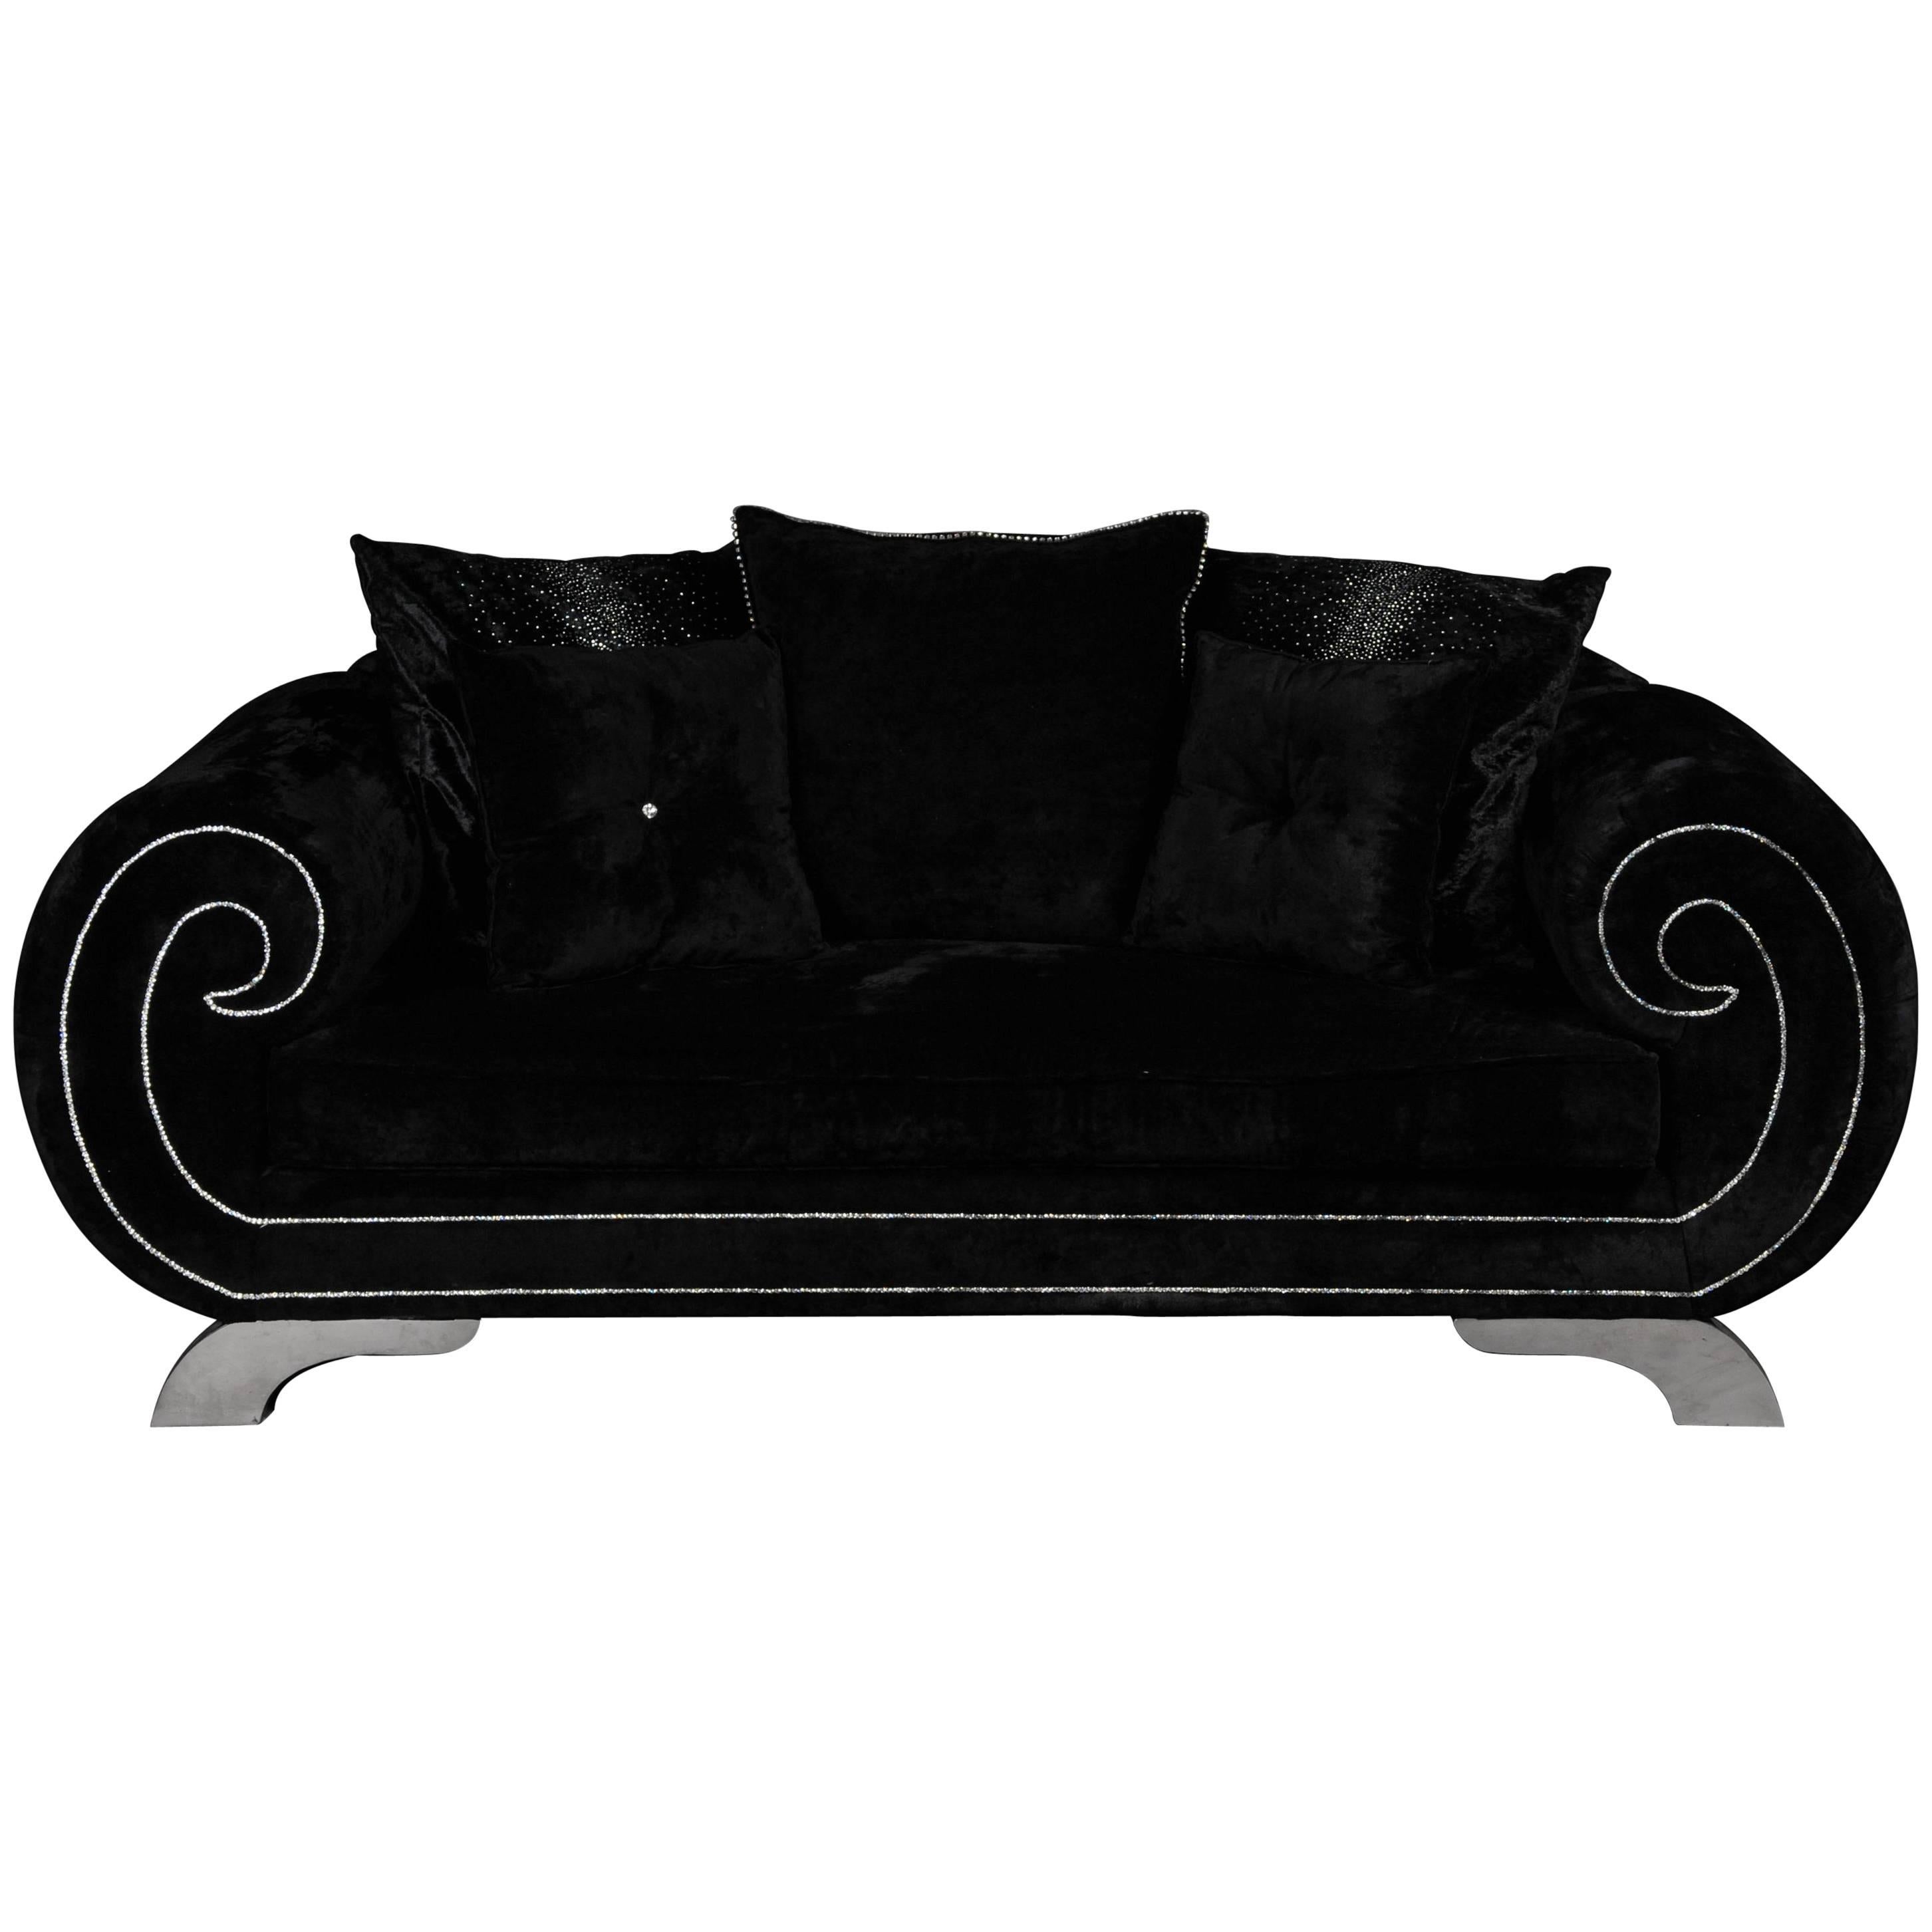 Einzigartiges luxuriöses Designer-Sofa oder Couch, Strasssteine, schwarzer Samt. Erwähnungen des Künstlers im Angebot